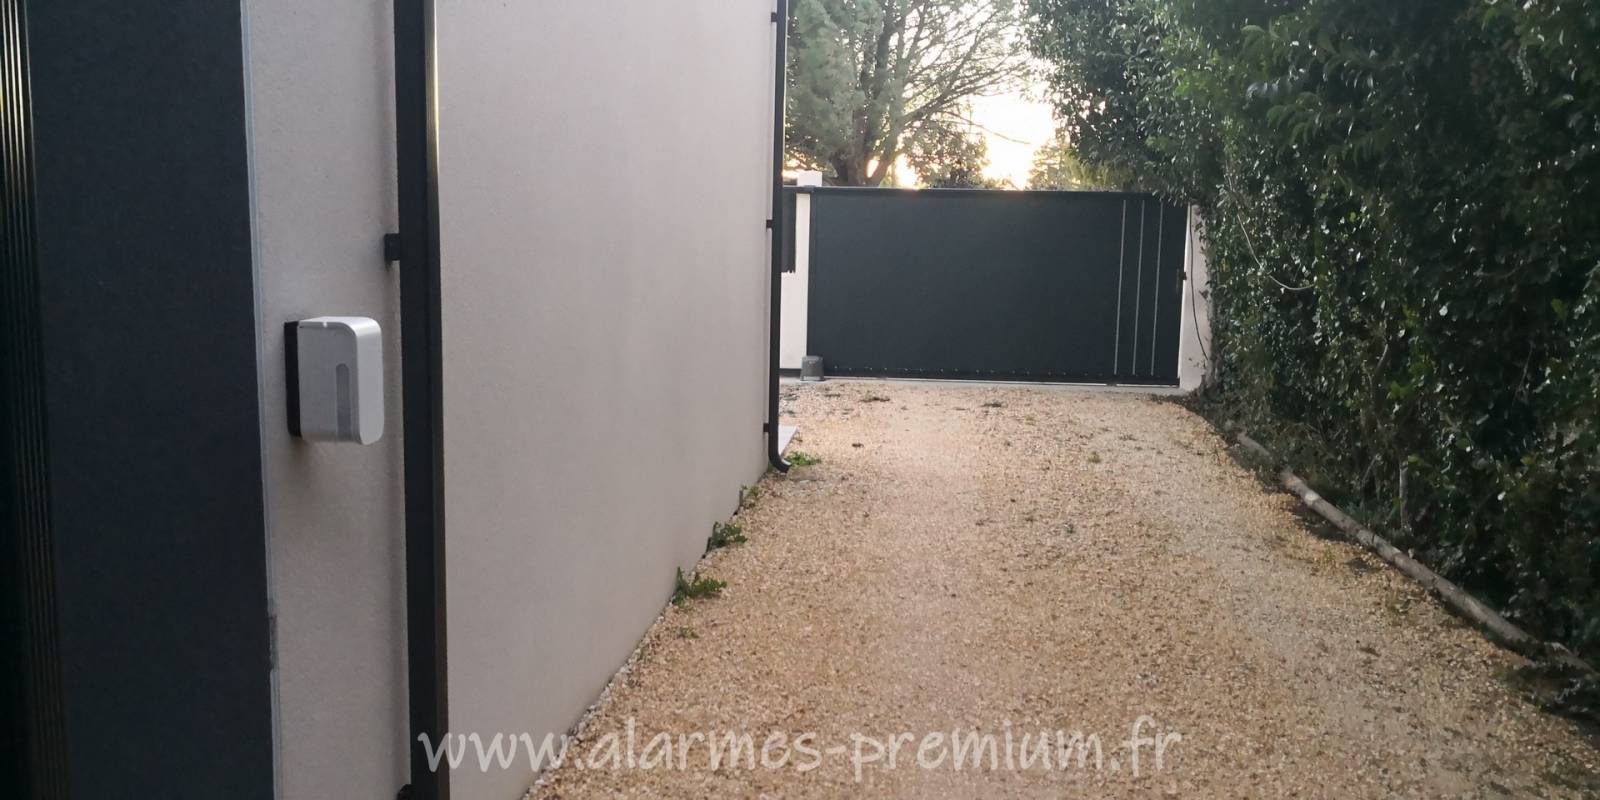 Vente et installation d'une alarme sans fil  avec détection extérieure pour villa à Garons prés de Nîmes